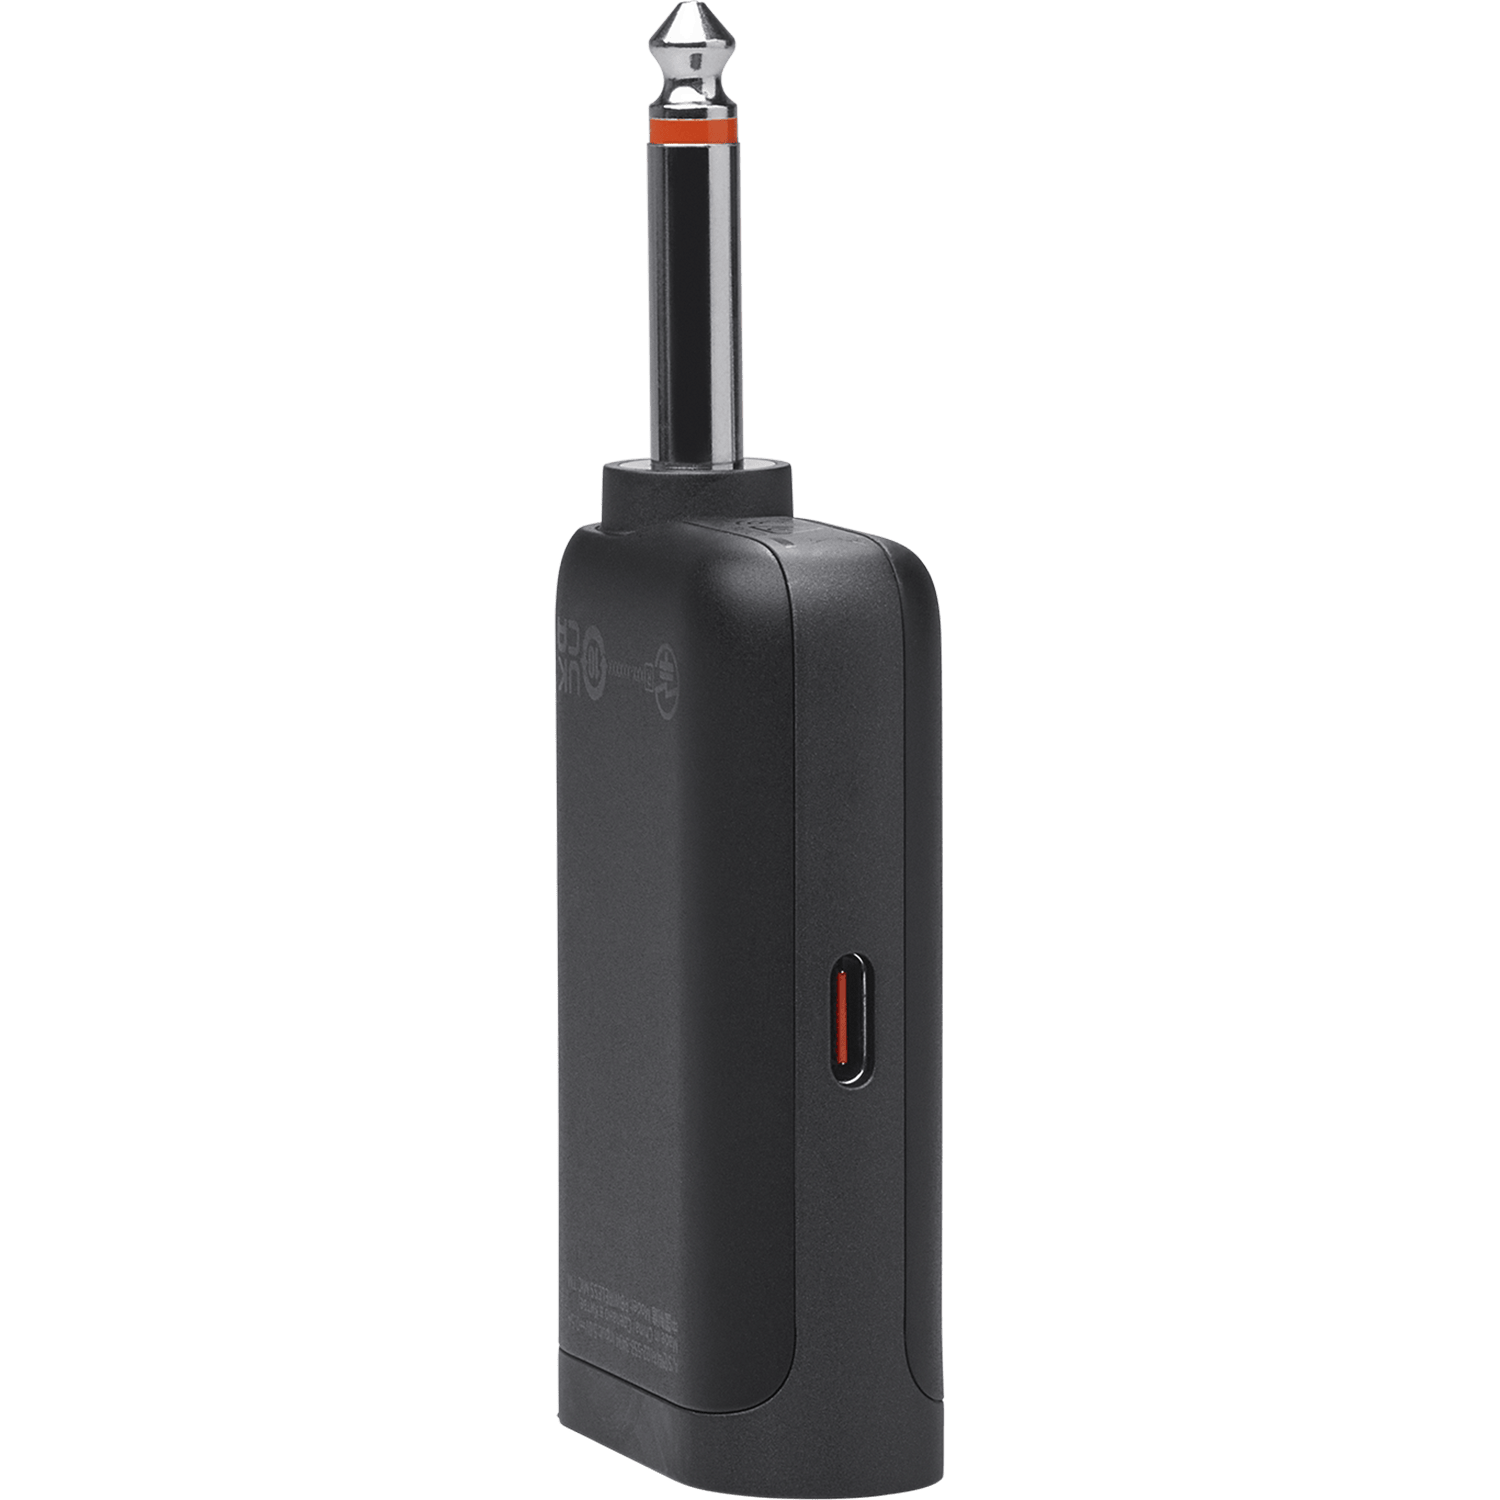 סט מיקרופונים אלחוטיים דיגיטליים JBL PartyBox Wireless Mic - צבע שחור שנה אחריות ע